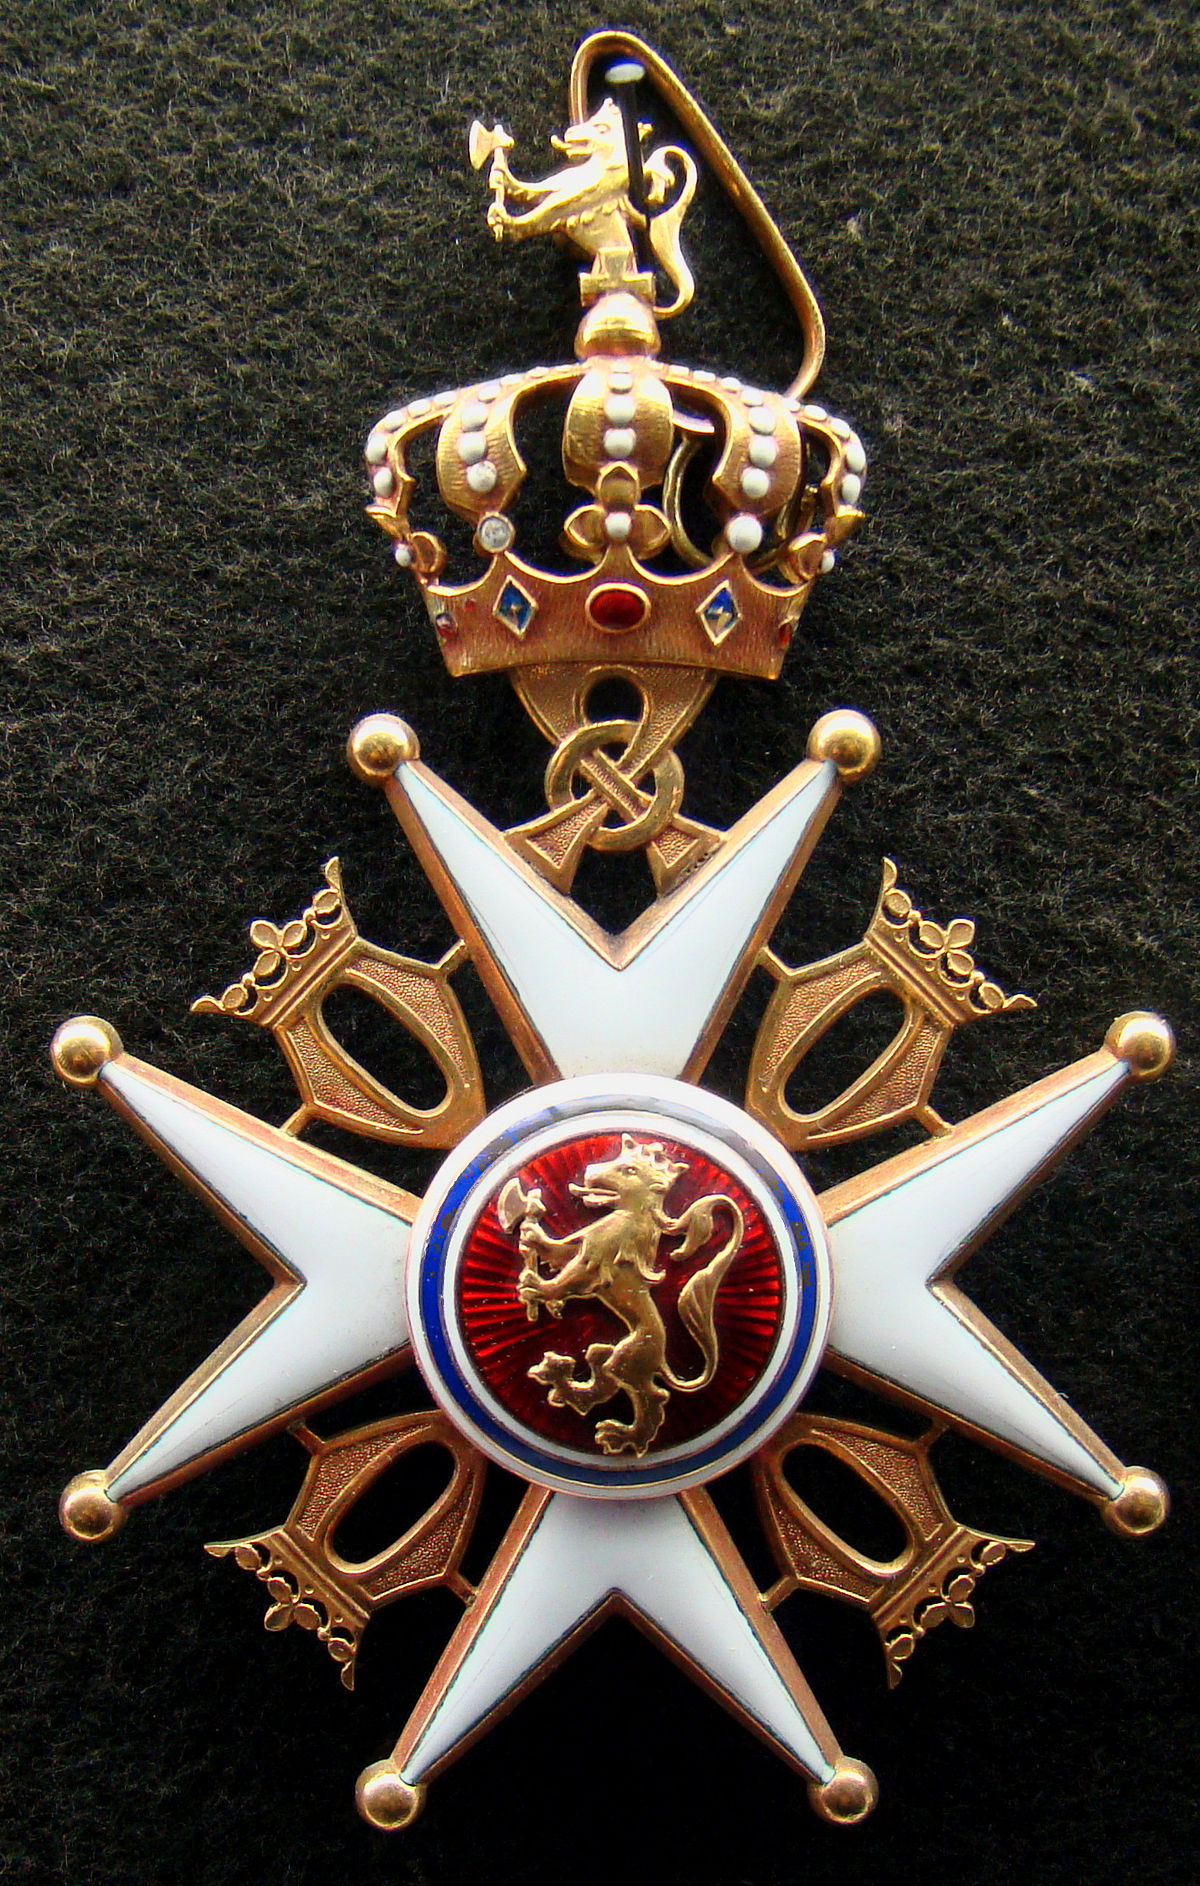 The Royal Norwegian Order of St. Olav